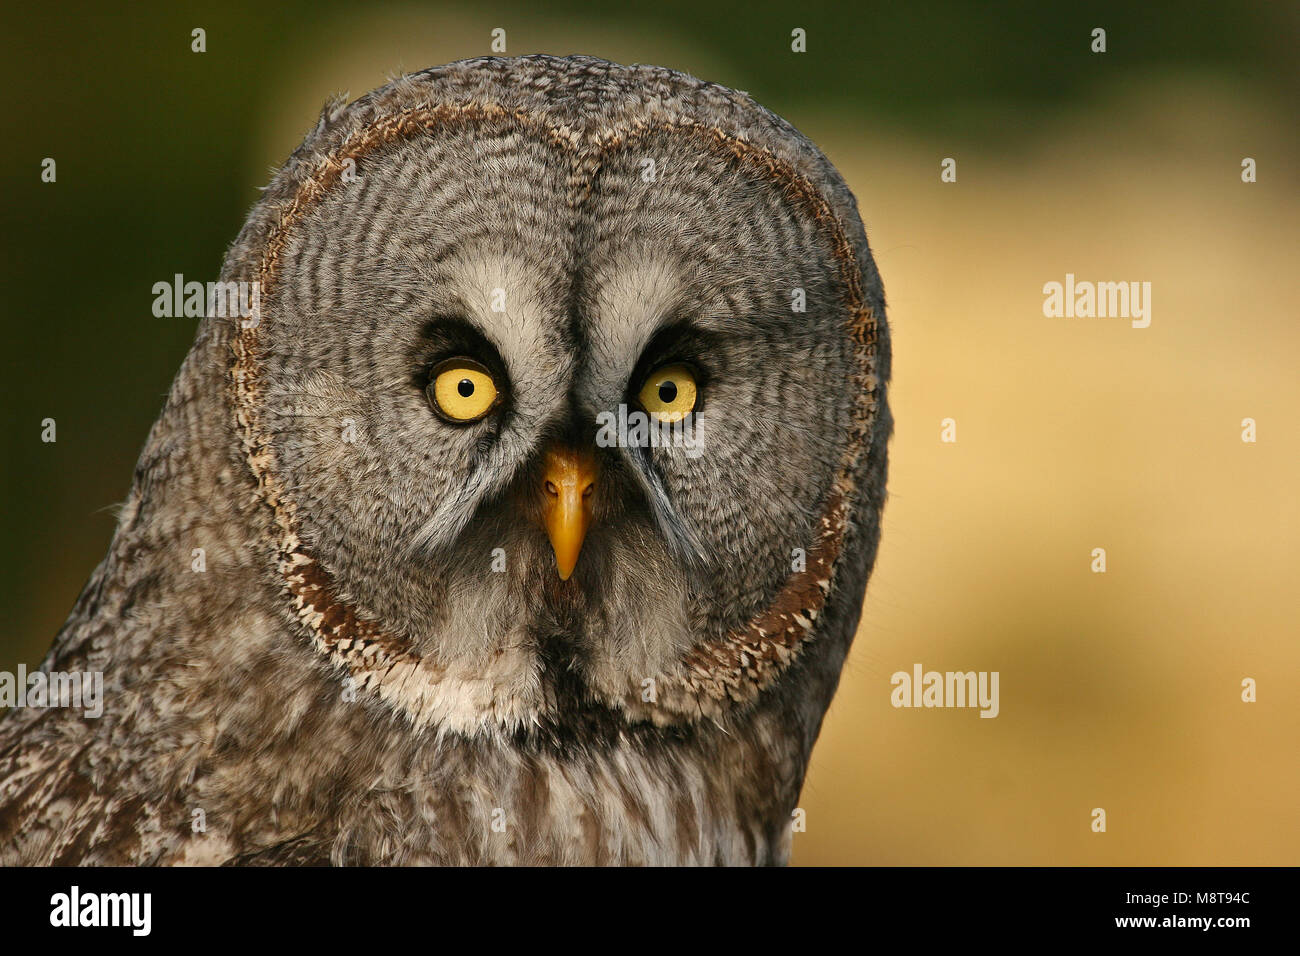 Laplanduil close-up; Great Grey Owl close-up Stock Photo